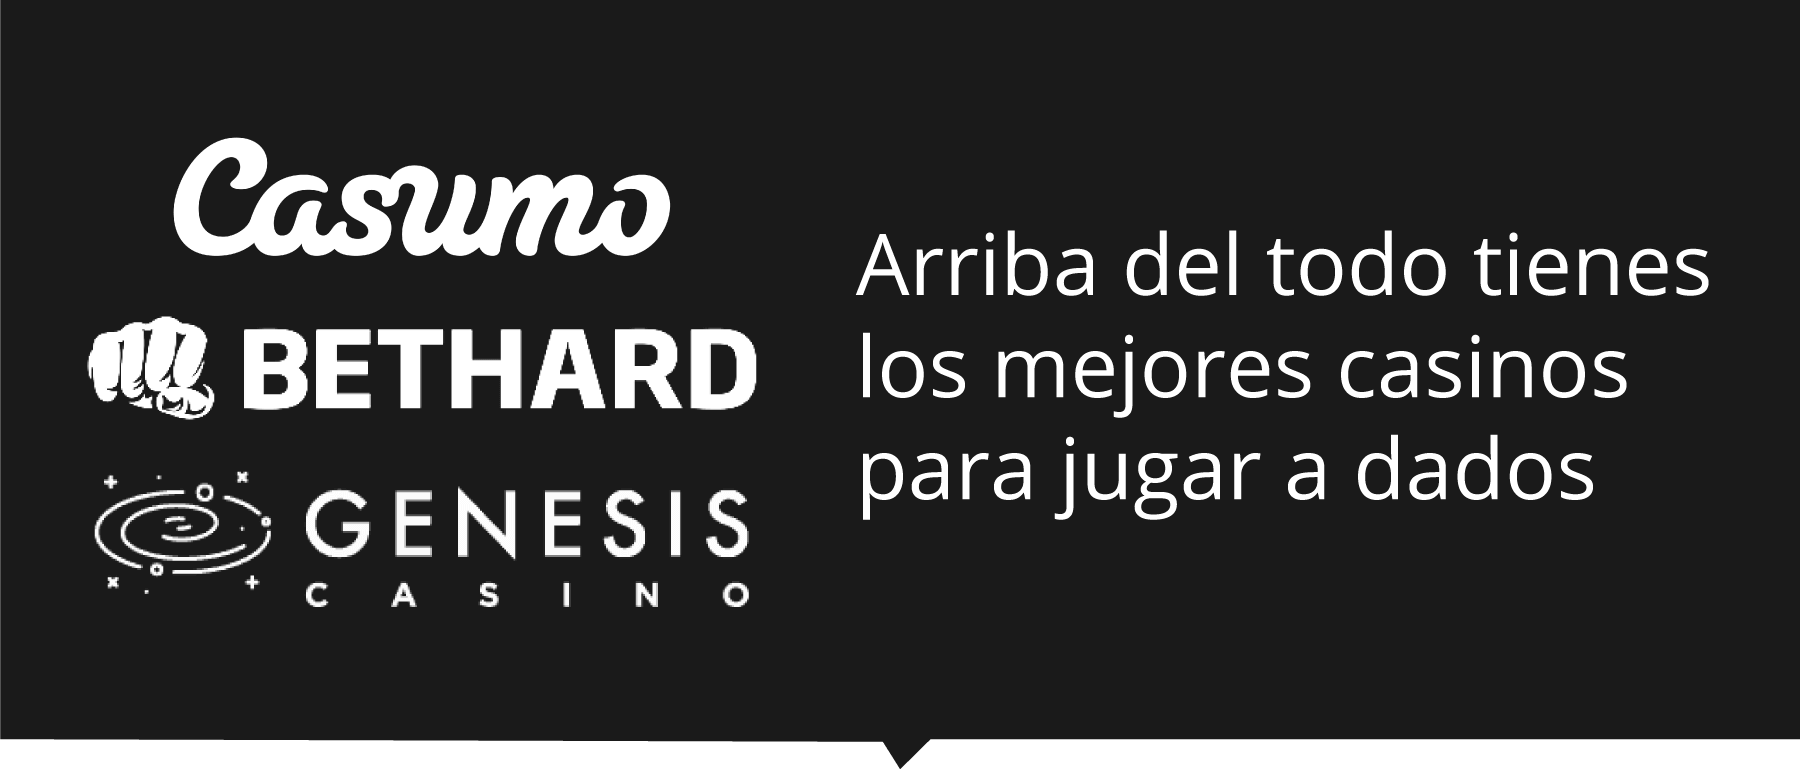 Top casinos online para jugar dados en España